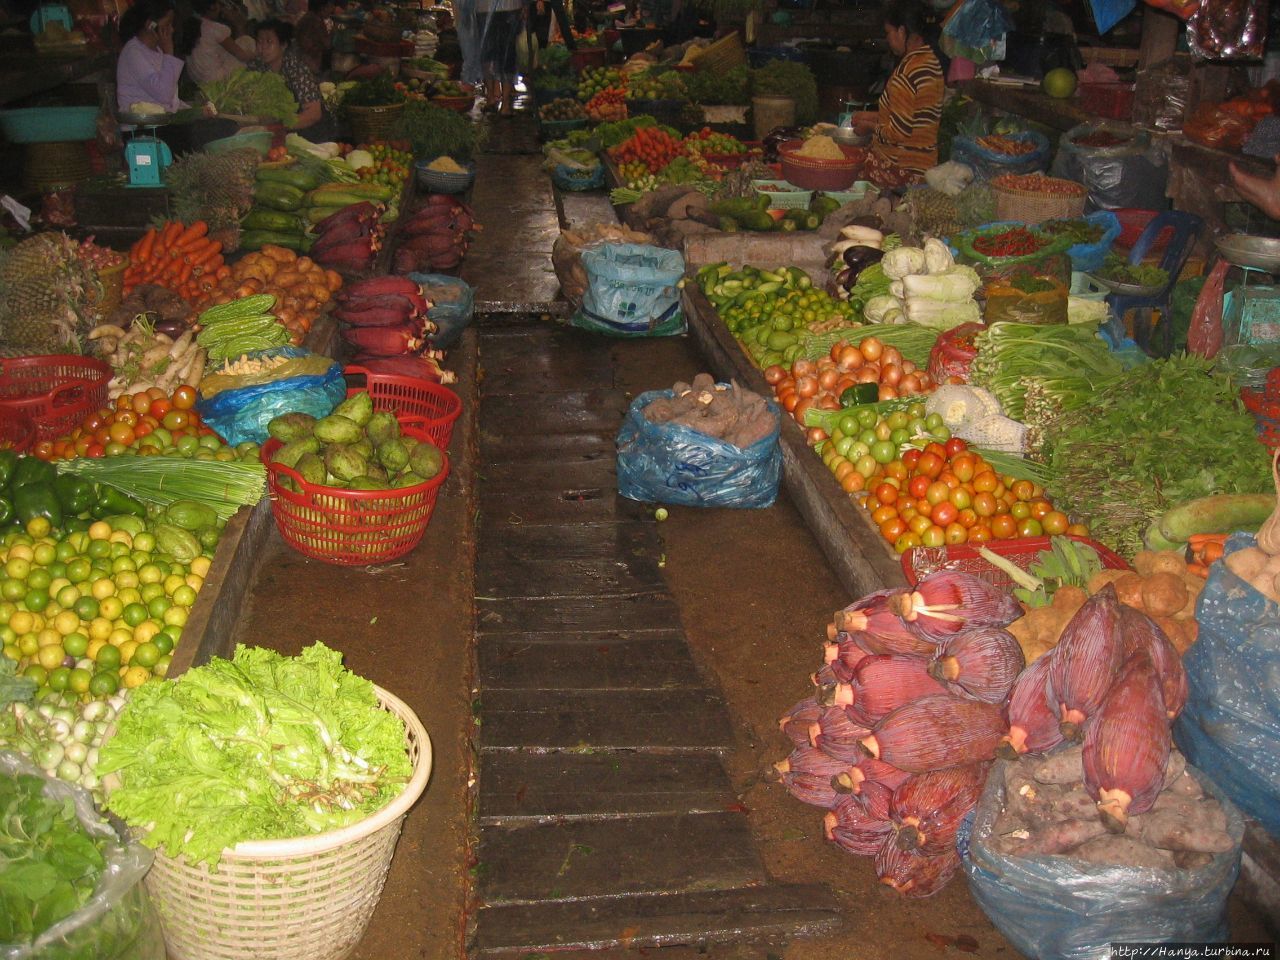 Рынок Phsar Leu Market Сиануквиль, Камбоджа